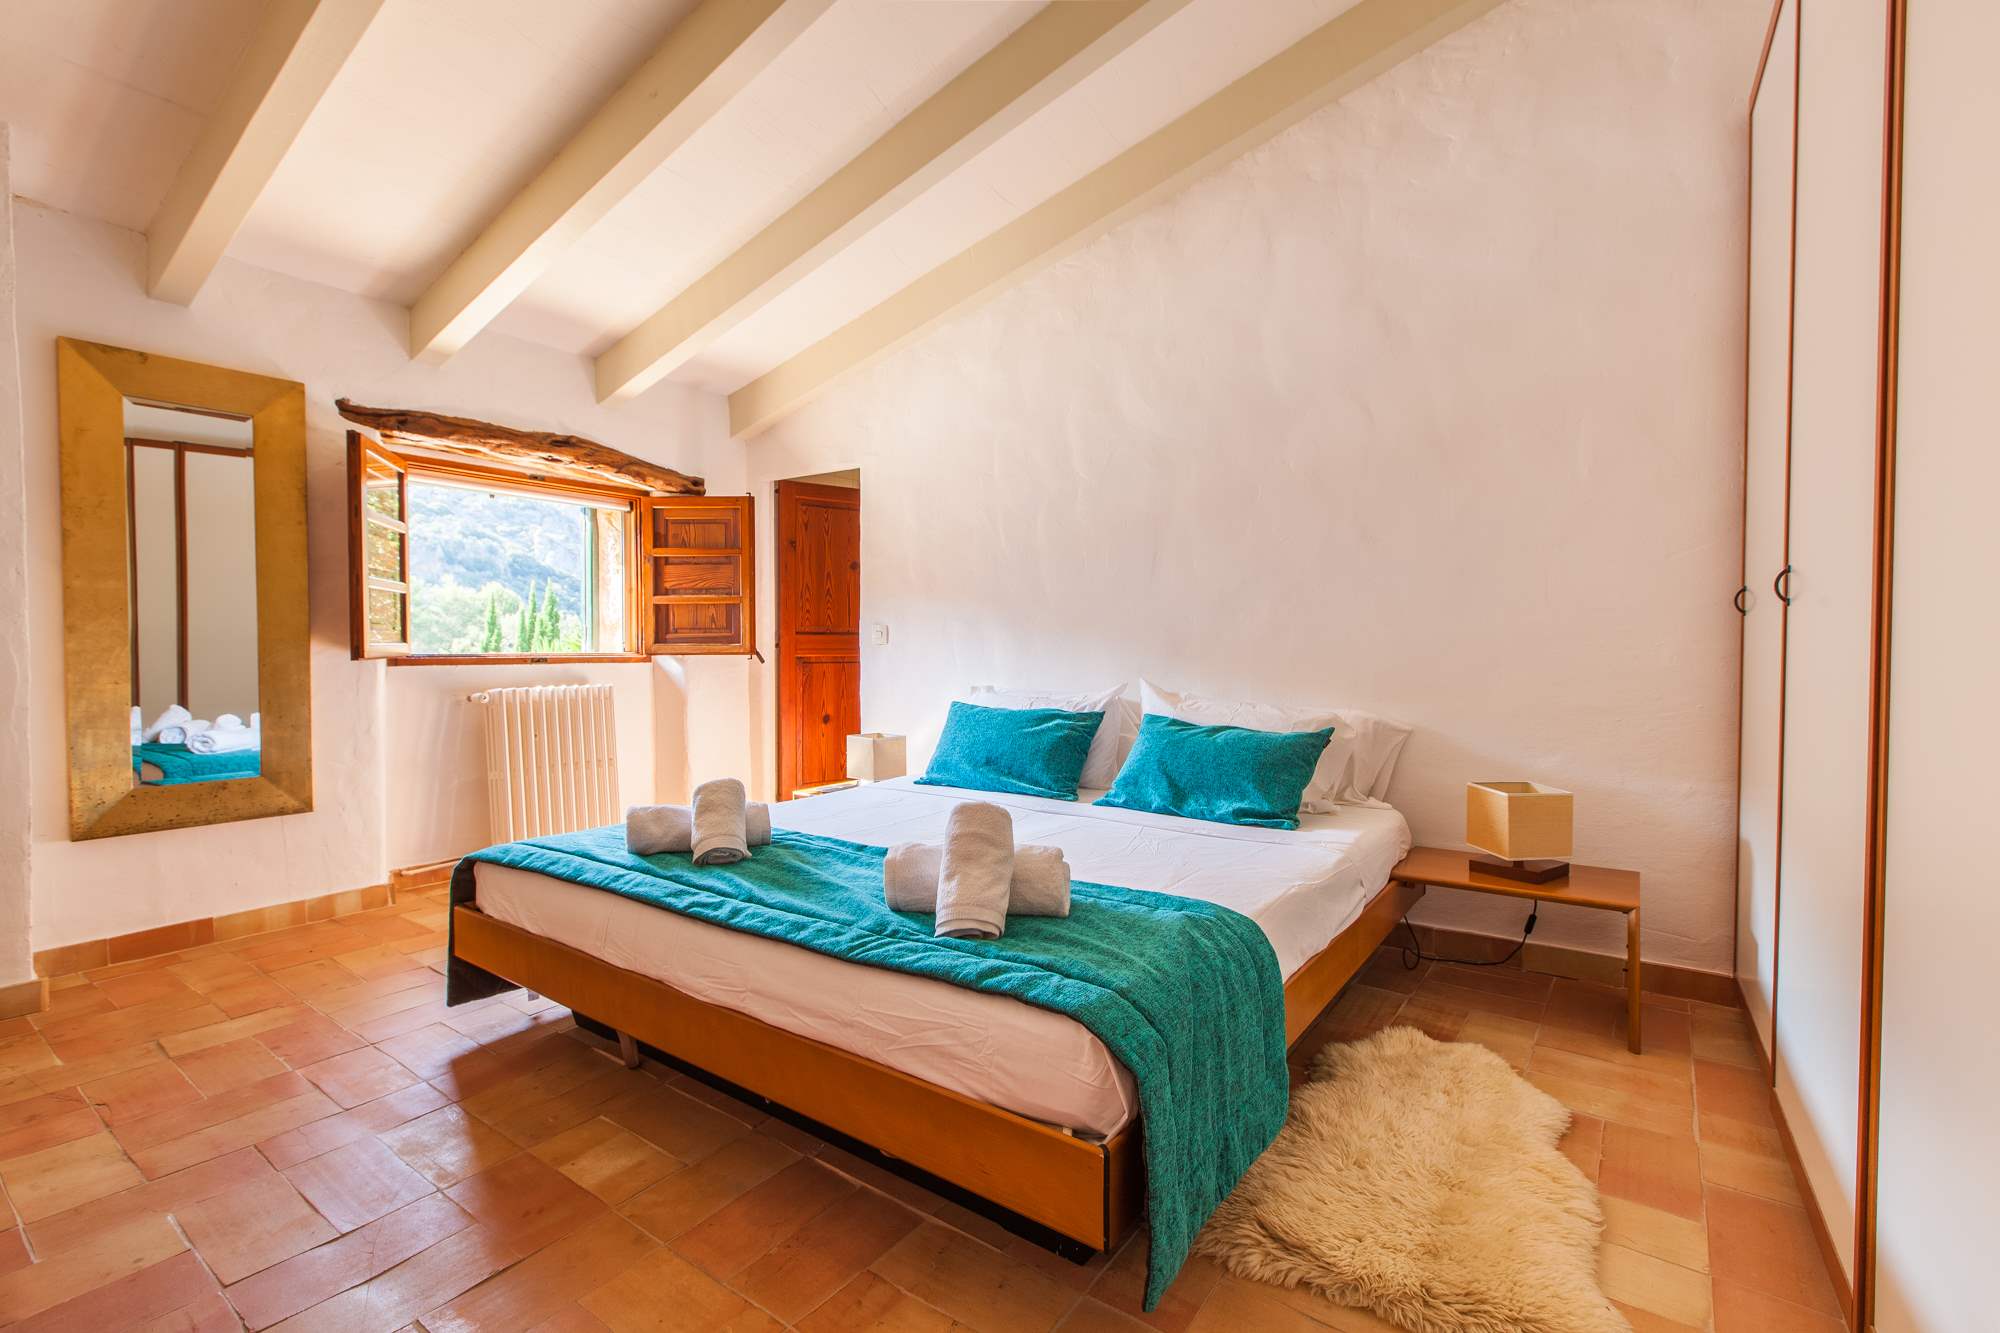 Es Clotal, 4 bedroom, 4 bedroom villa in Pollensa & Puerto Pollensa, Majorca Photo #15